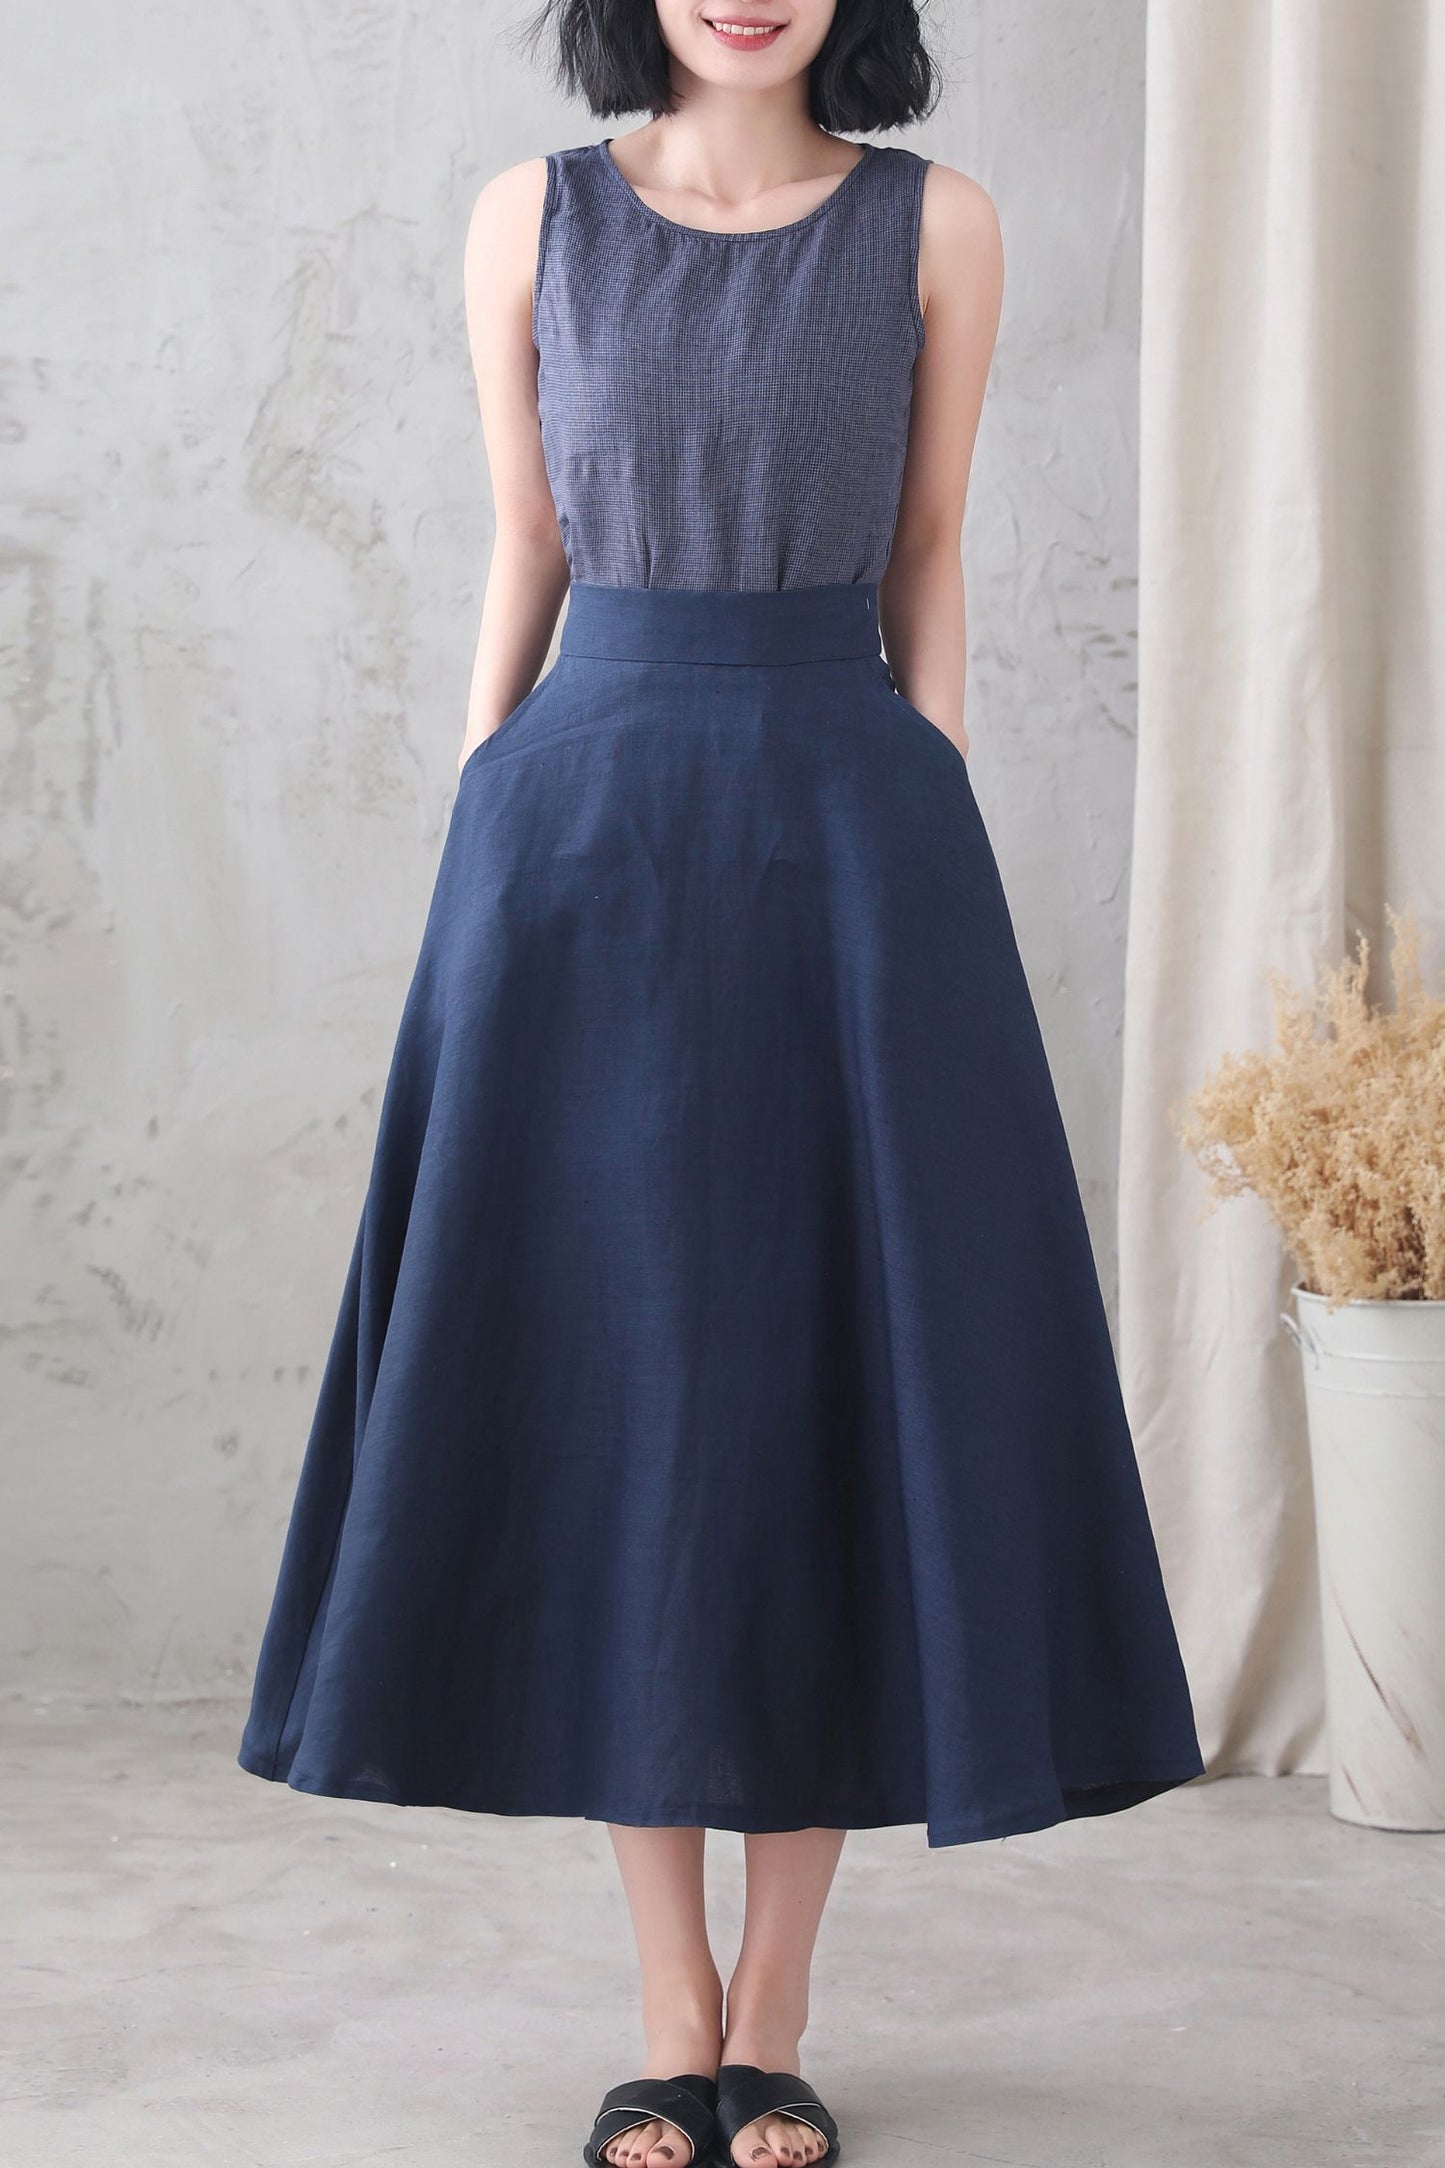 Dark Blue High Waist A Line Elastic Waist Linen Skirt 3339